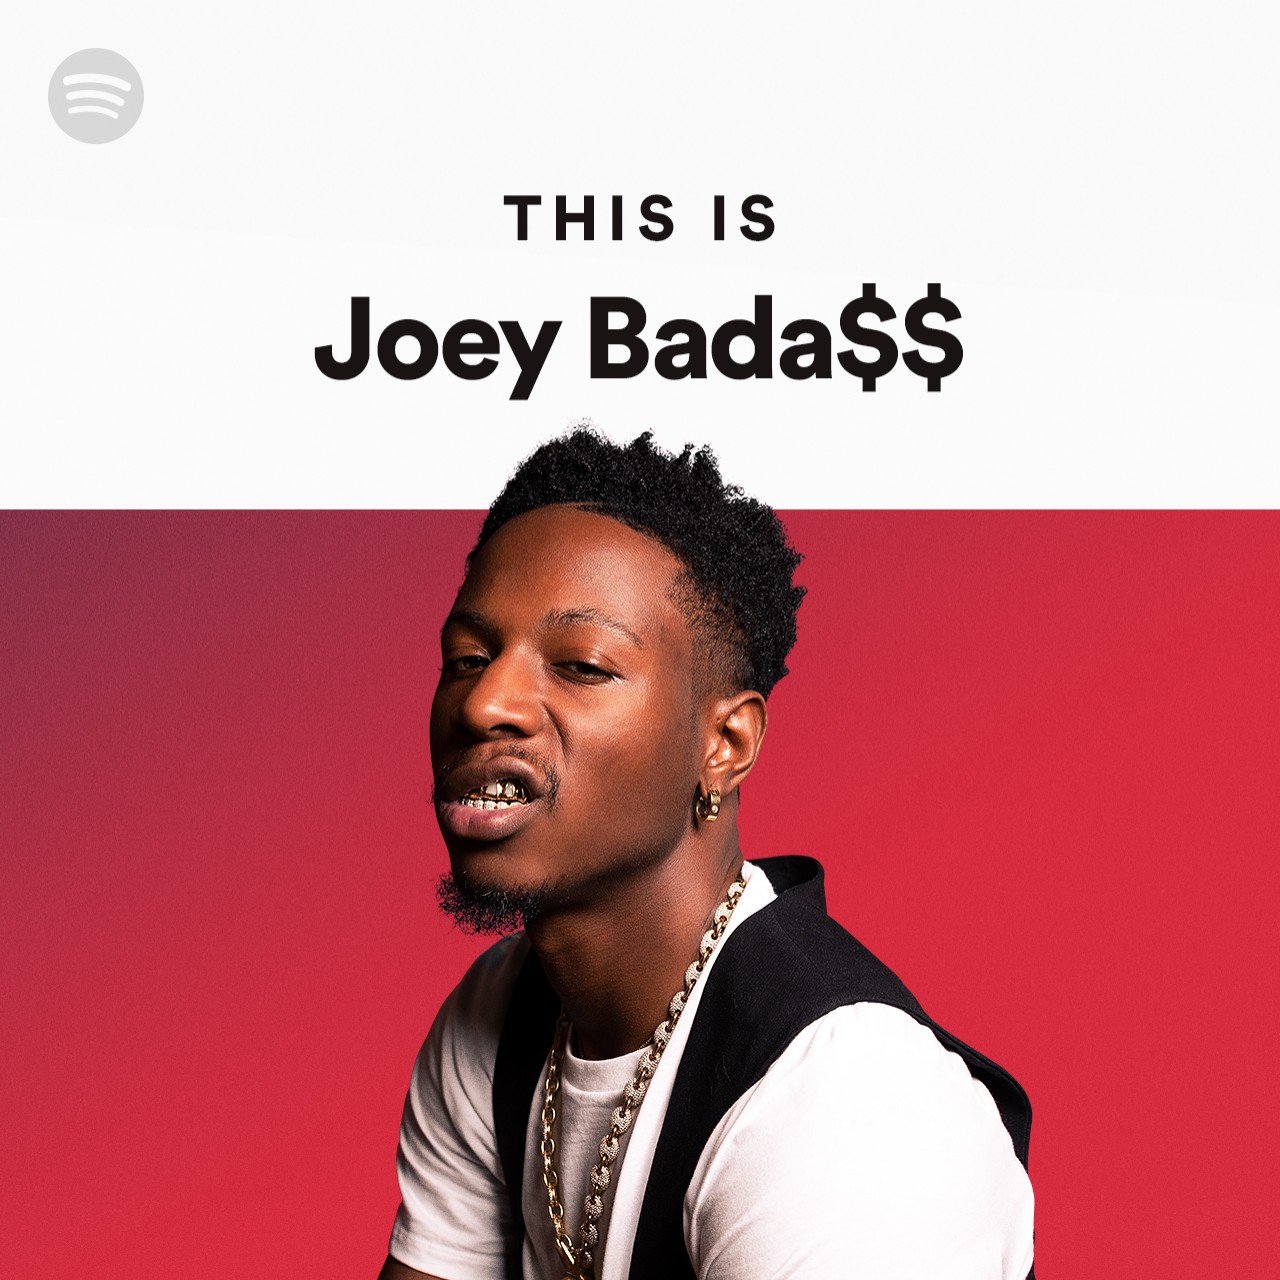 joey badass mixtape rejex